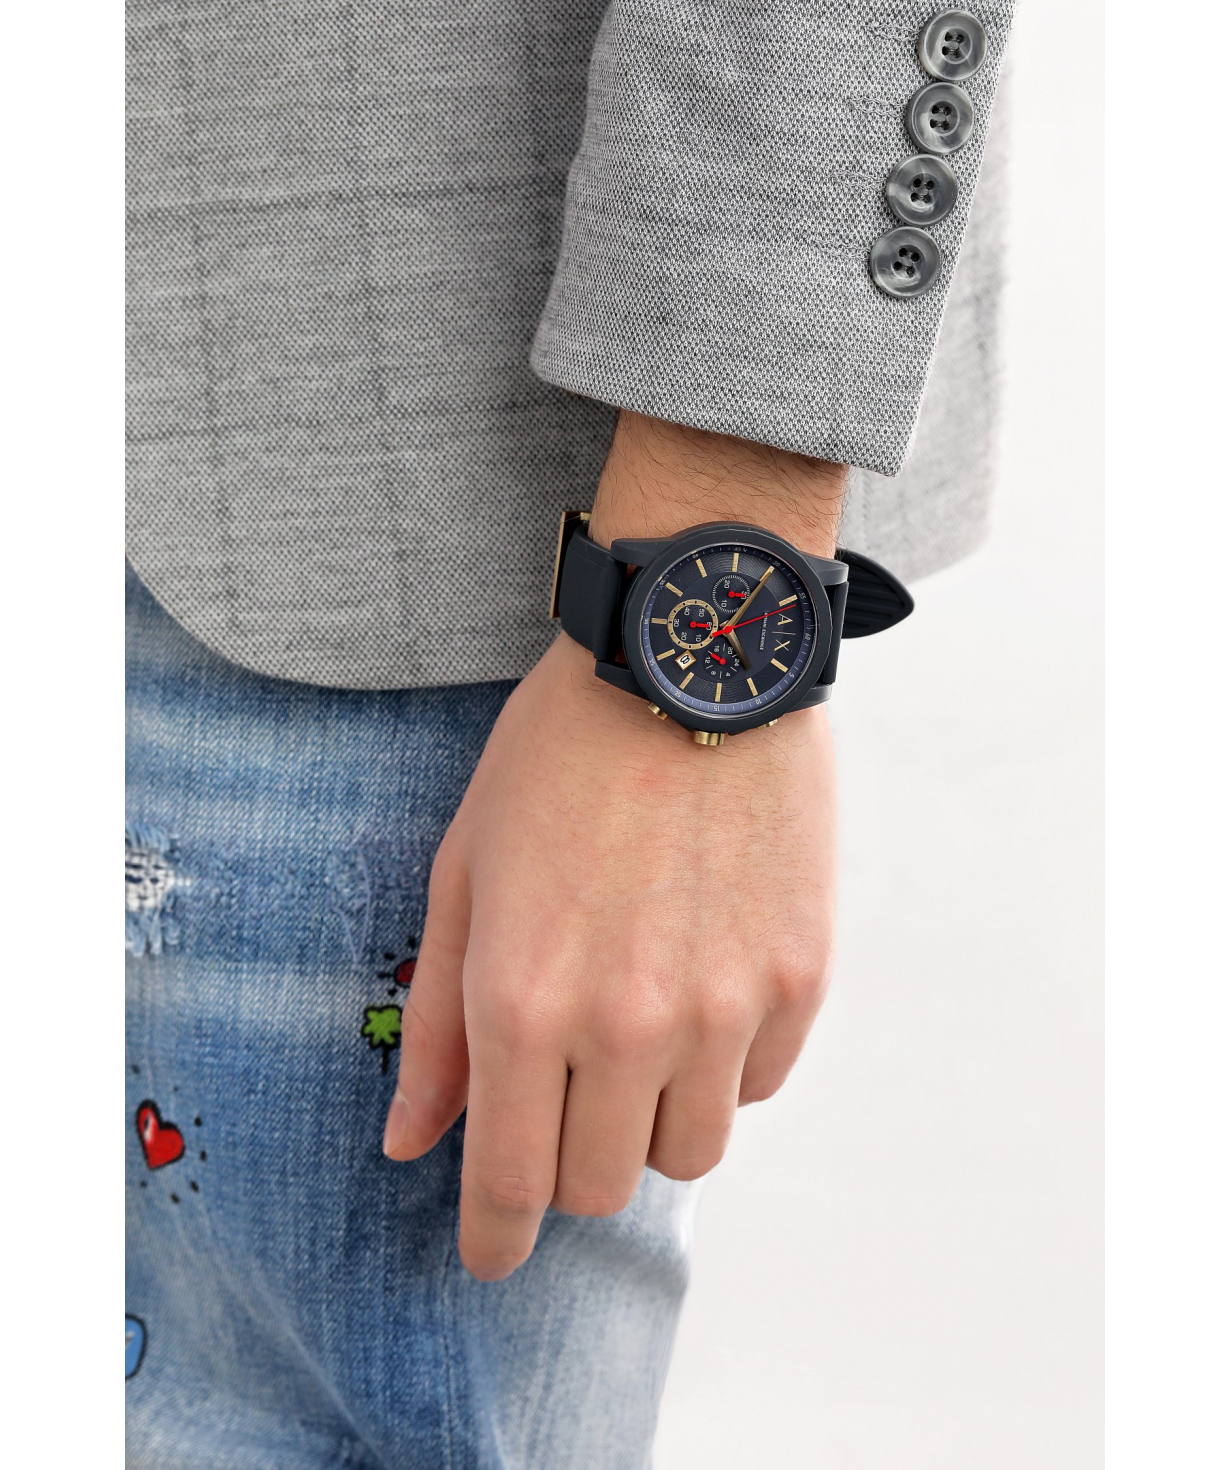 Наручные часы `Armani Exchange`  AX1335